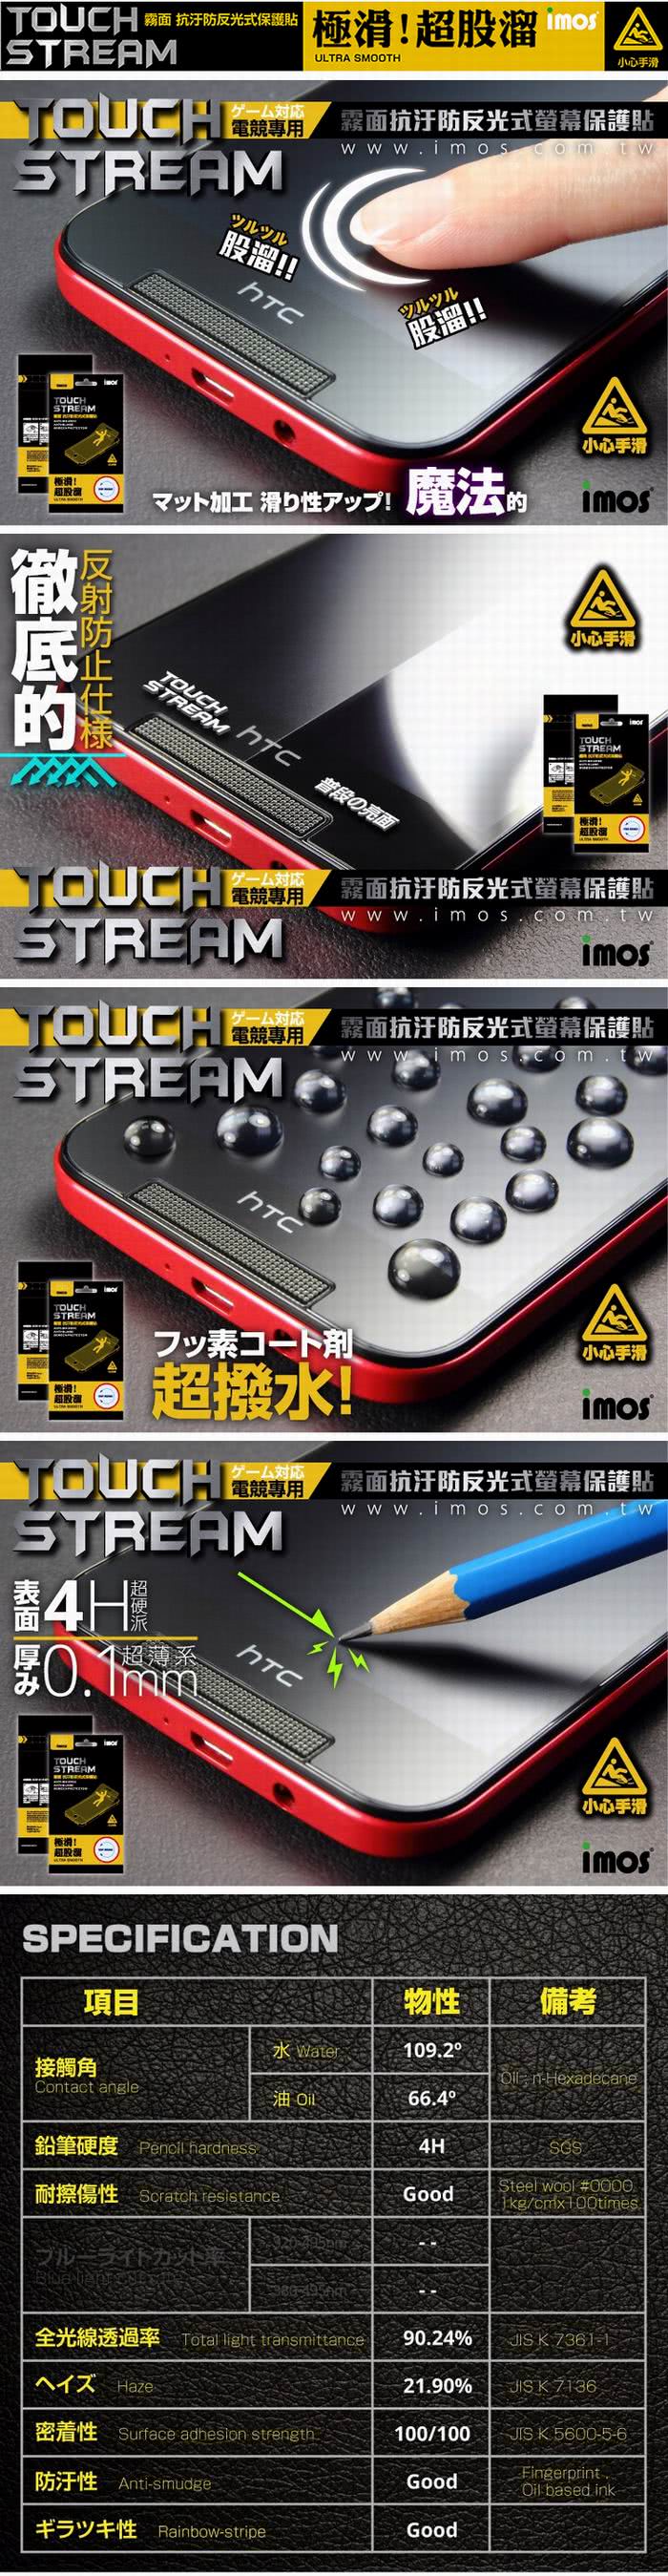 【iMOS Touch Stream】Sony Z3 螢幕保護貼(霧面)